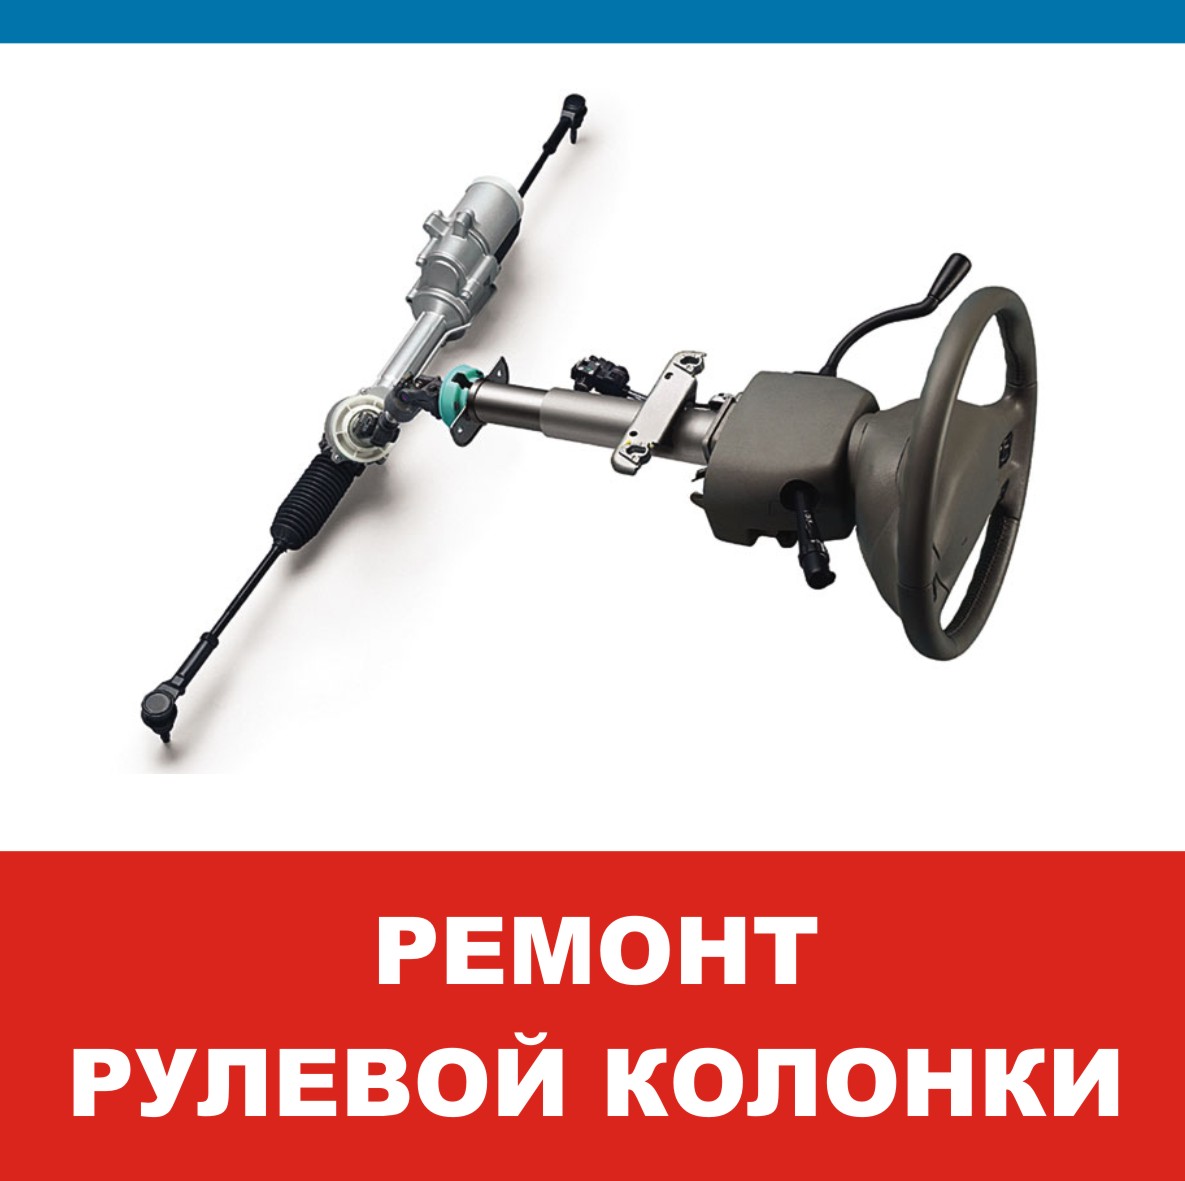 Ответы kormstroytorg.ru: Привет скажите сколько масло надо заливать в рулевой редуктор ваз и какое?